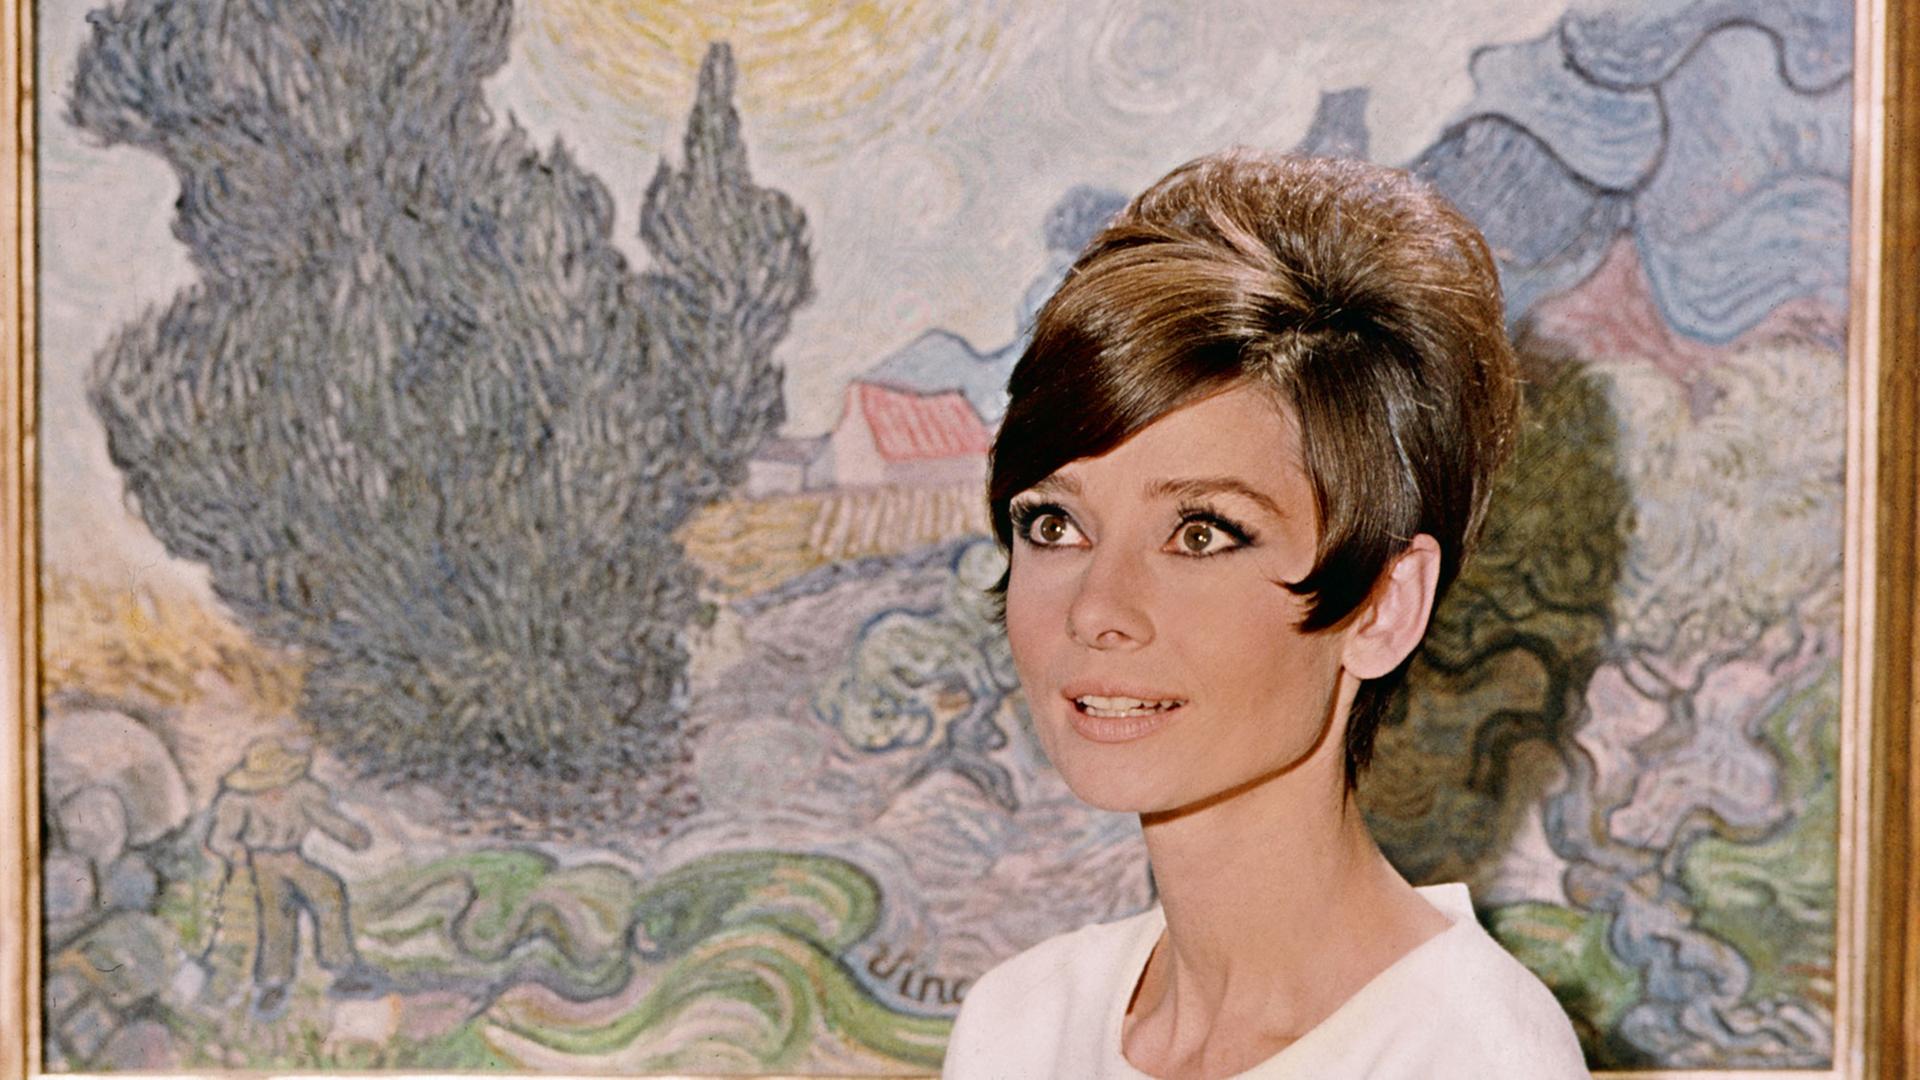 Die Schauspielerin Audrey Hepburn vor einem Gemälde von Vincent Van Gogh während einer Filmszene. Undatierte Aufnahme.